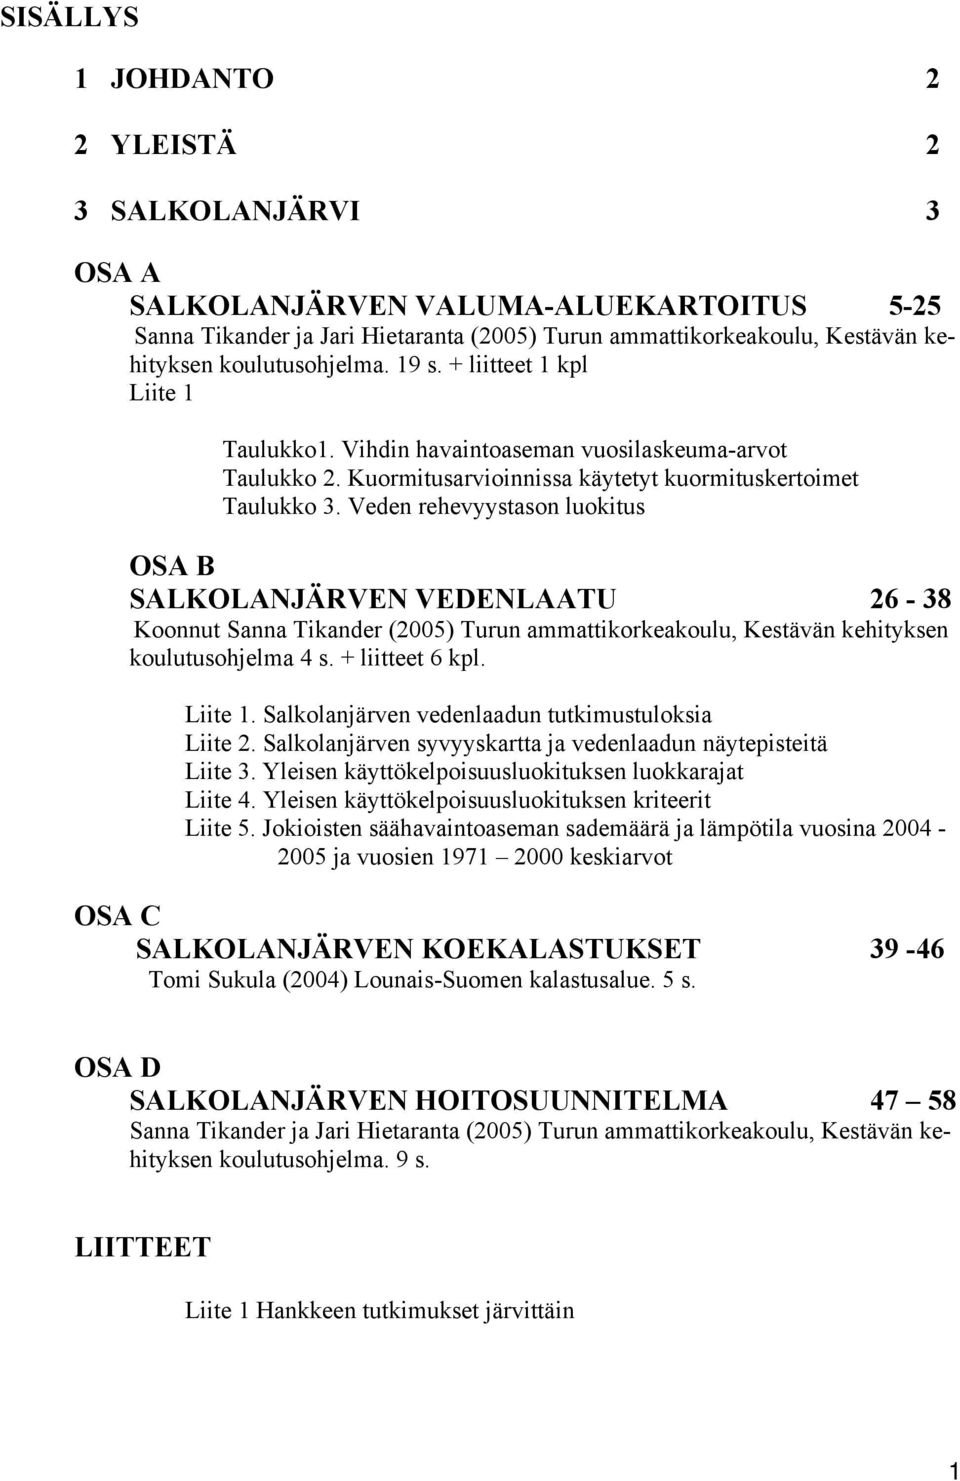 Veden rehevyystason luokitus OSA B SALKOLANJÄRVEN VEDENLAATU 26-38 Koonnut Sanna Tikander (2005) Turun ammattikorkeakoulu, Kestävän kehityksen koulutusohjelma 4 s. + liitteet 6 kpl. Liite 1.